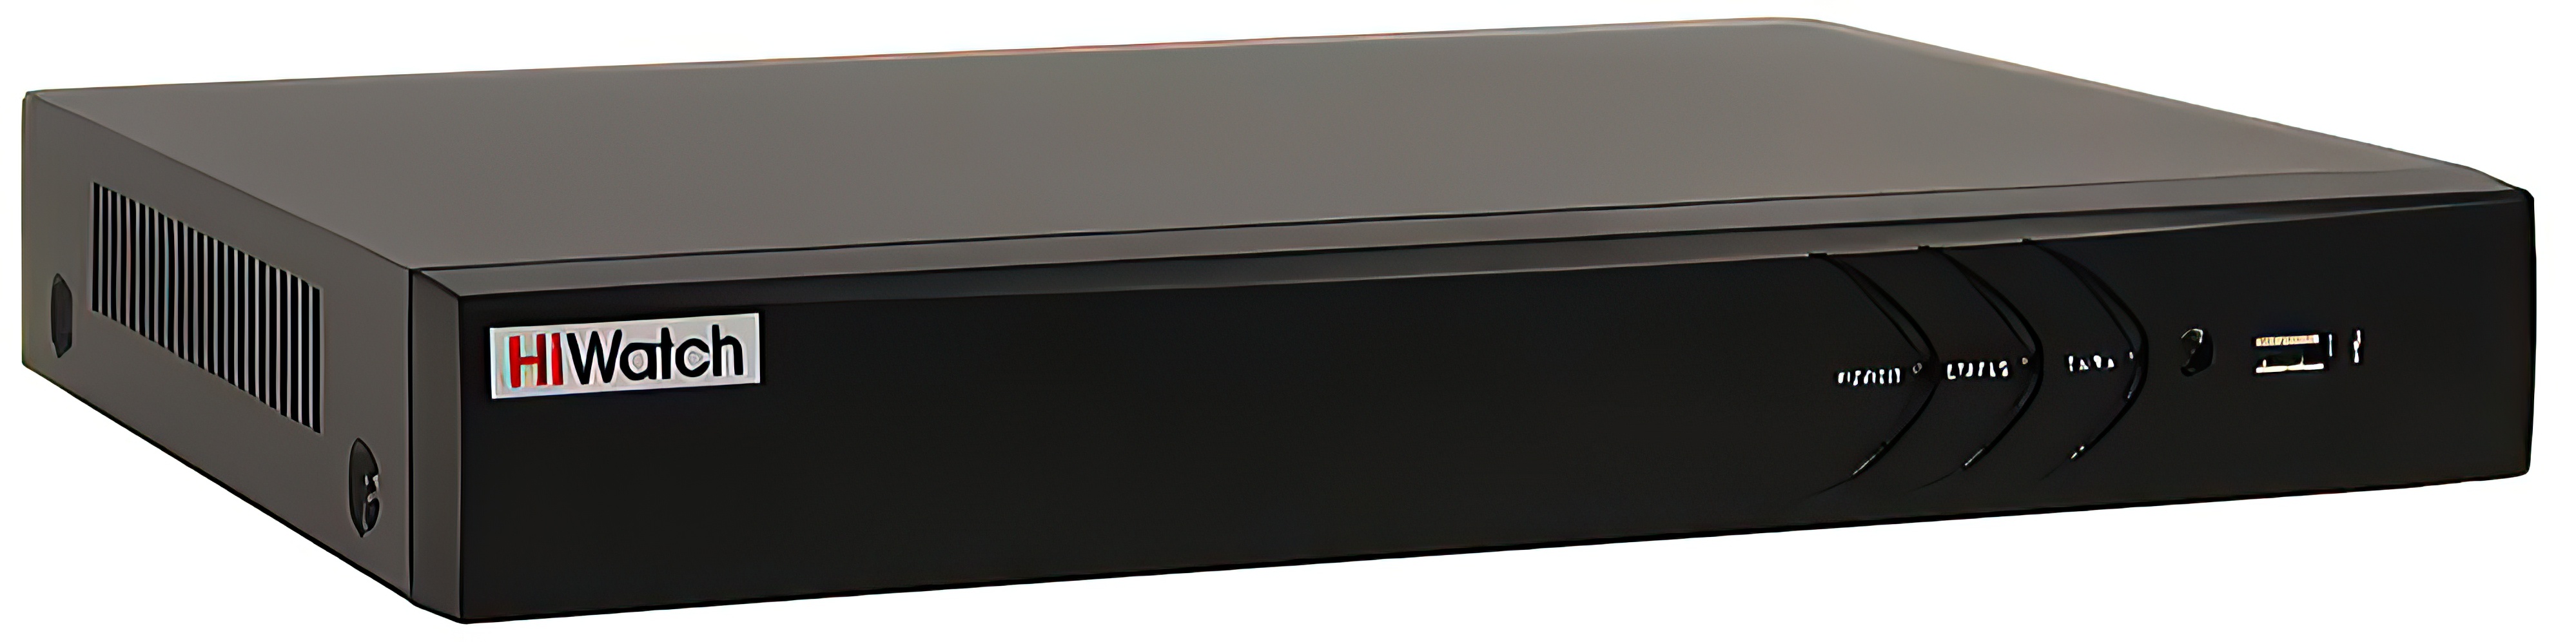 8-канальный гибридный HD-TVI видеорегистратор HiWatch DS-H308QAС гибридный восьмиканальный видеорегистратор amatek